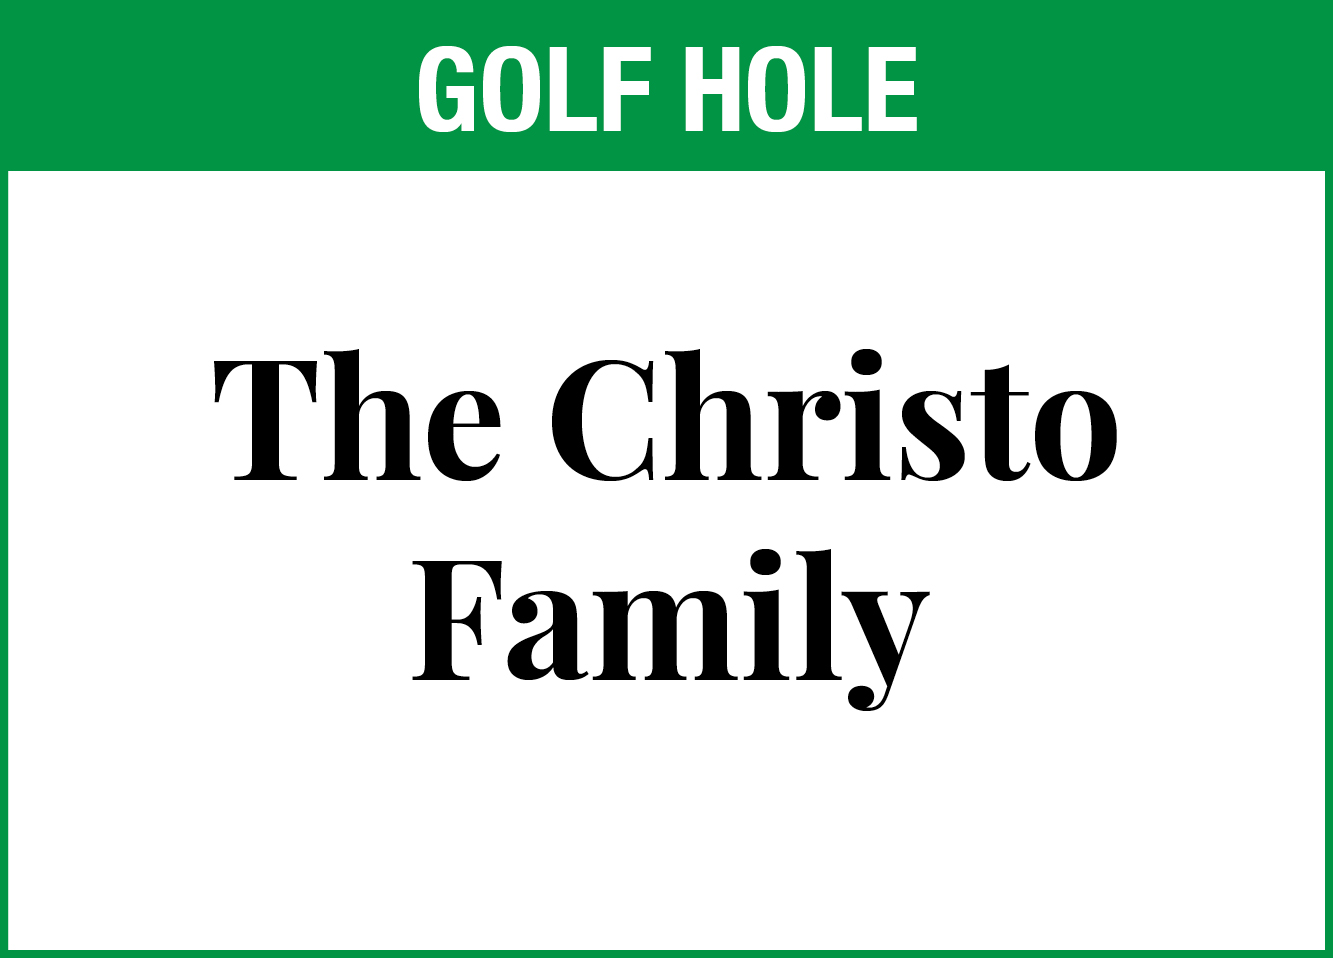 The Christo Family